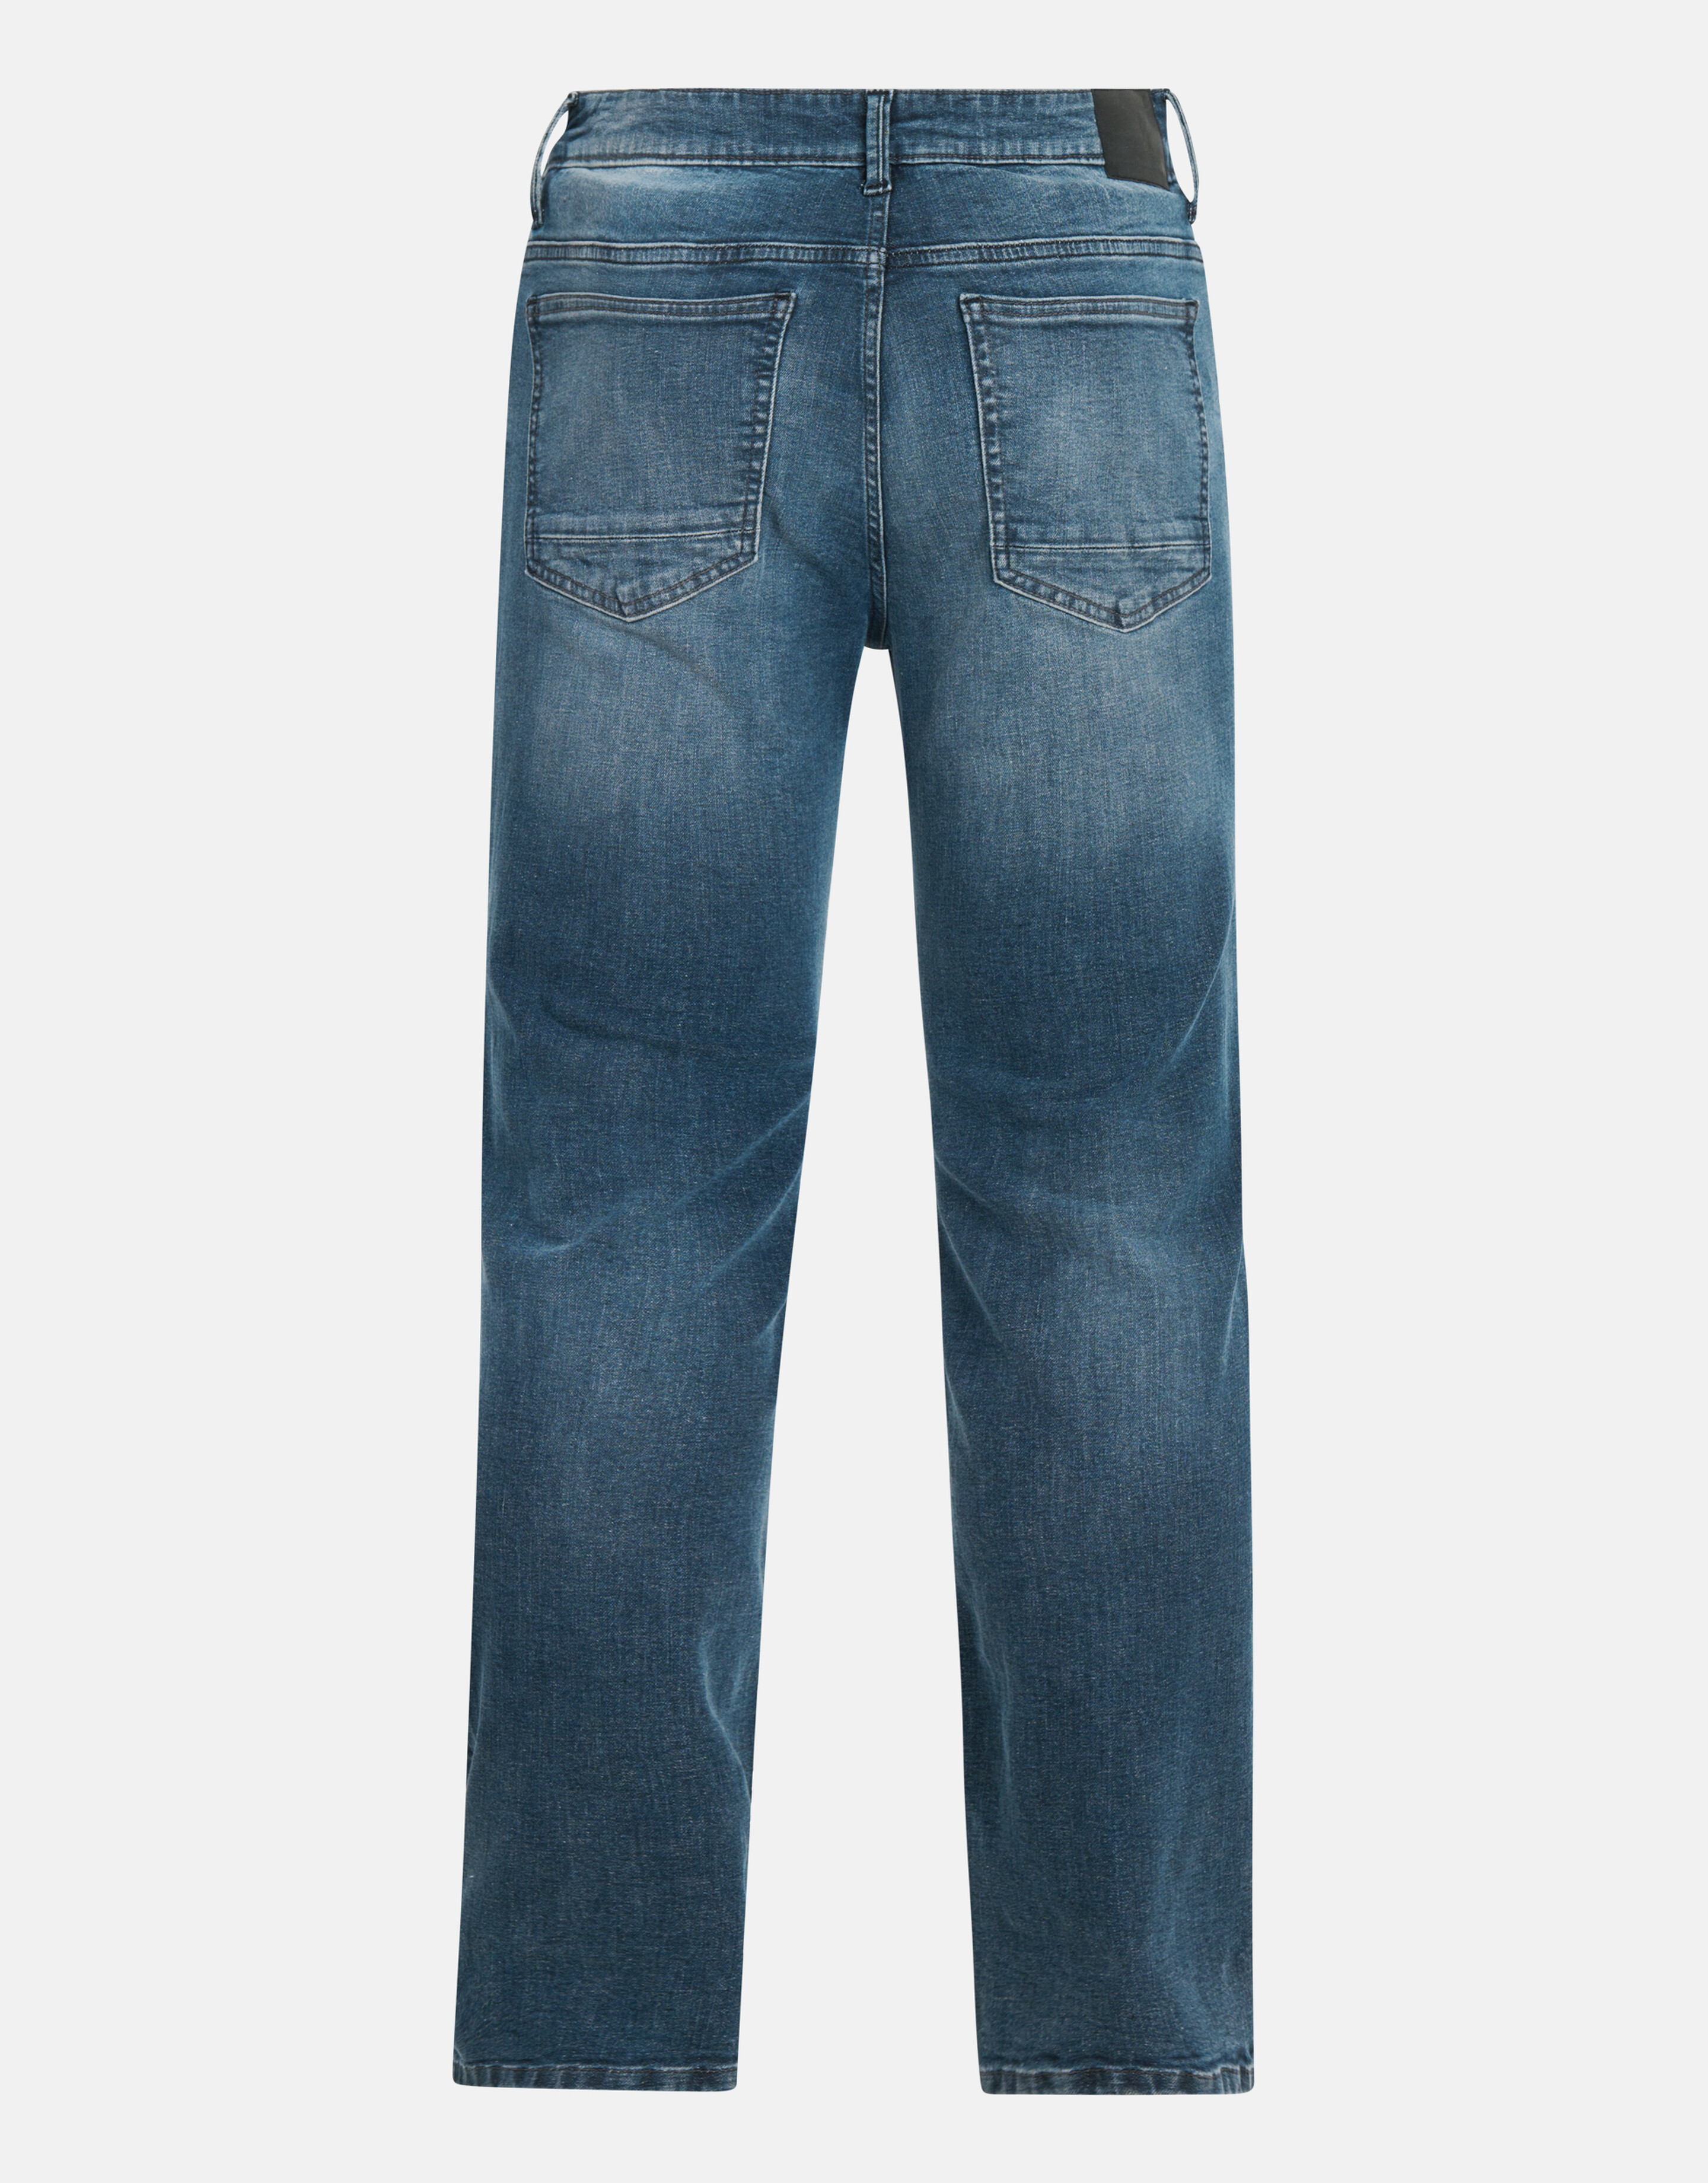 Slim Fit Jeans Blauw/Grijs L32 SHOEBY MEN